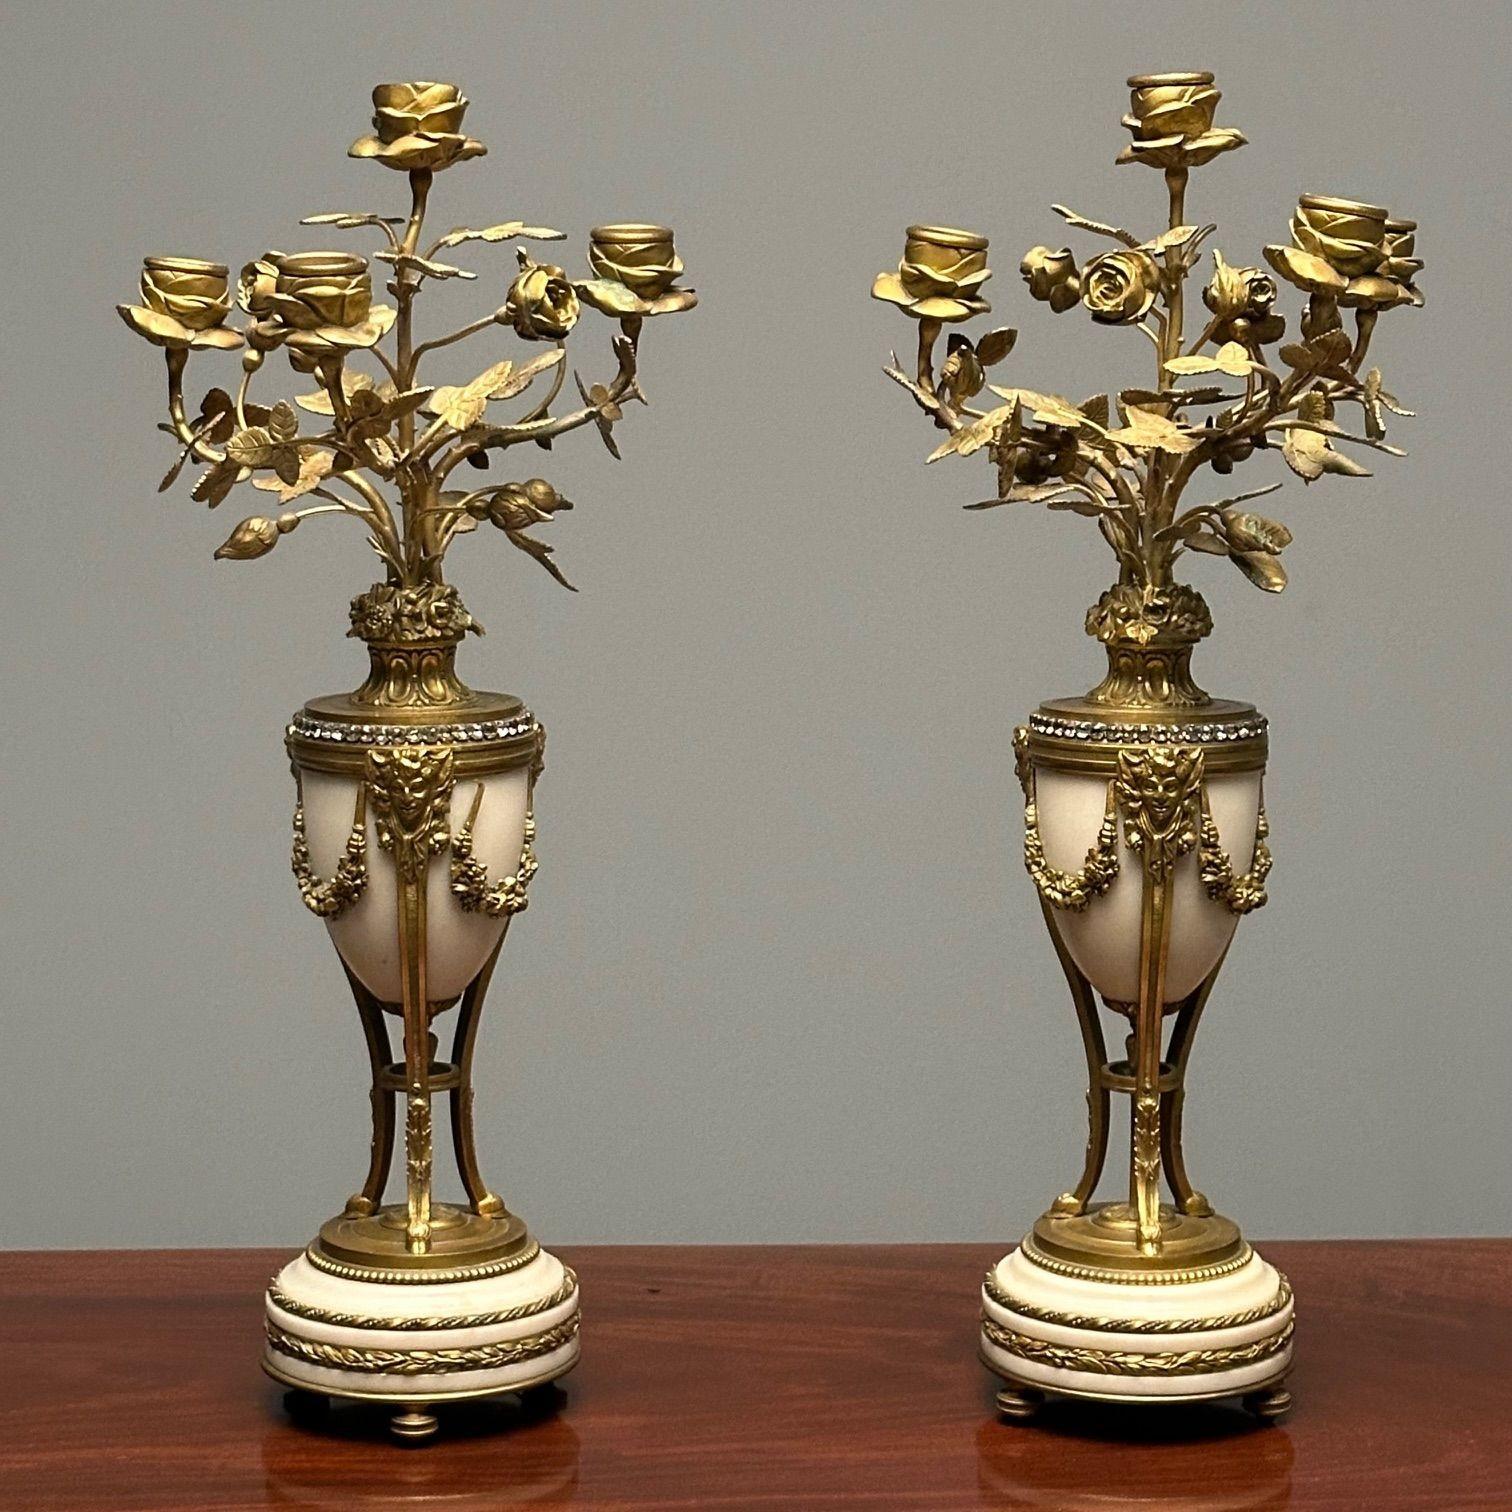 Zwei vierflammige Kandelaber aus vergoldetem Metall und weißem Marmor im Louis-XVI-Stil

Jeweils mit 